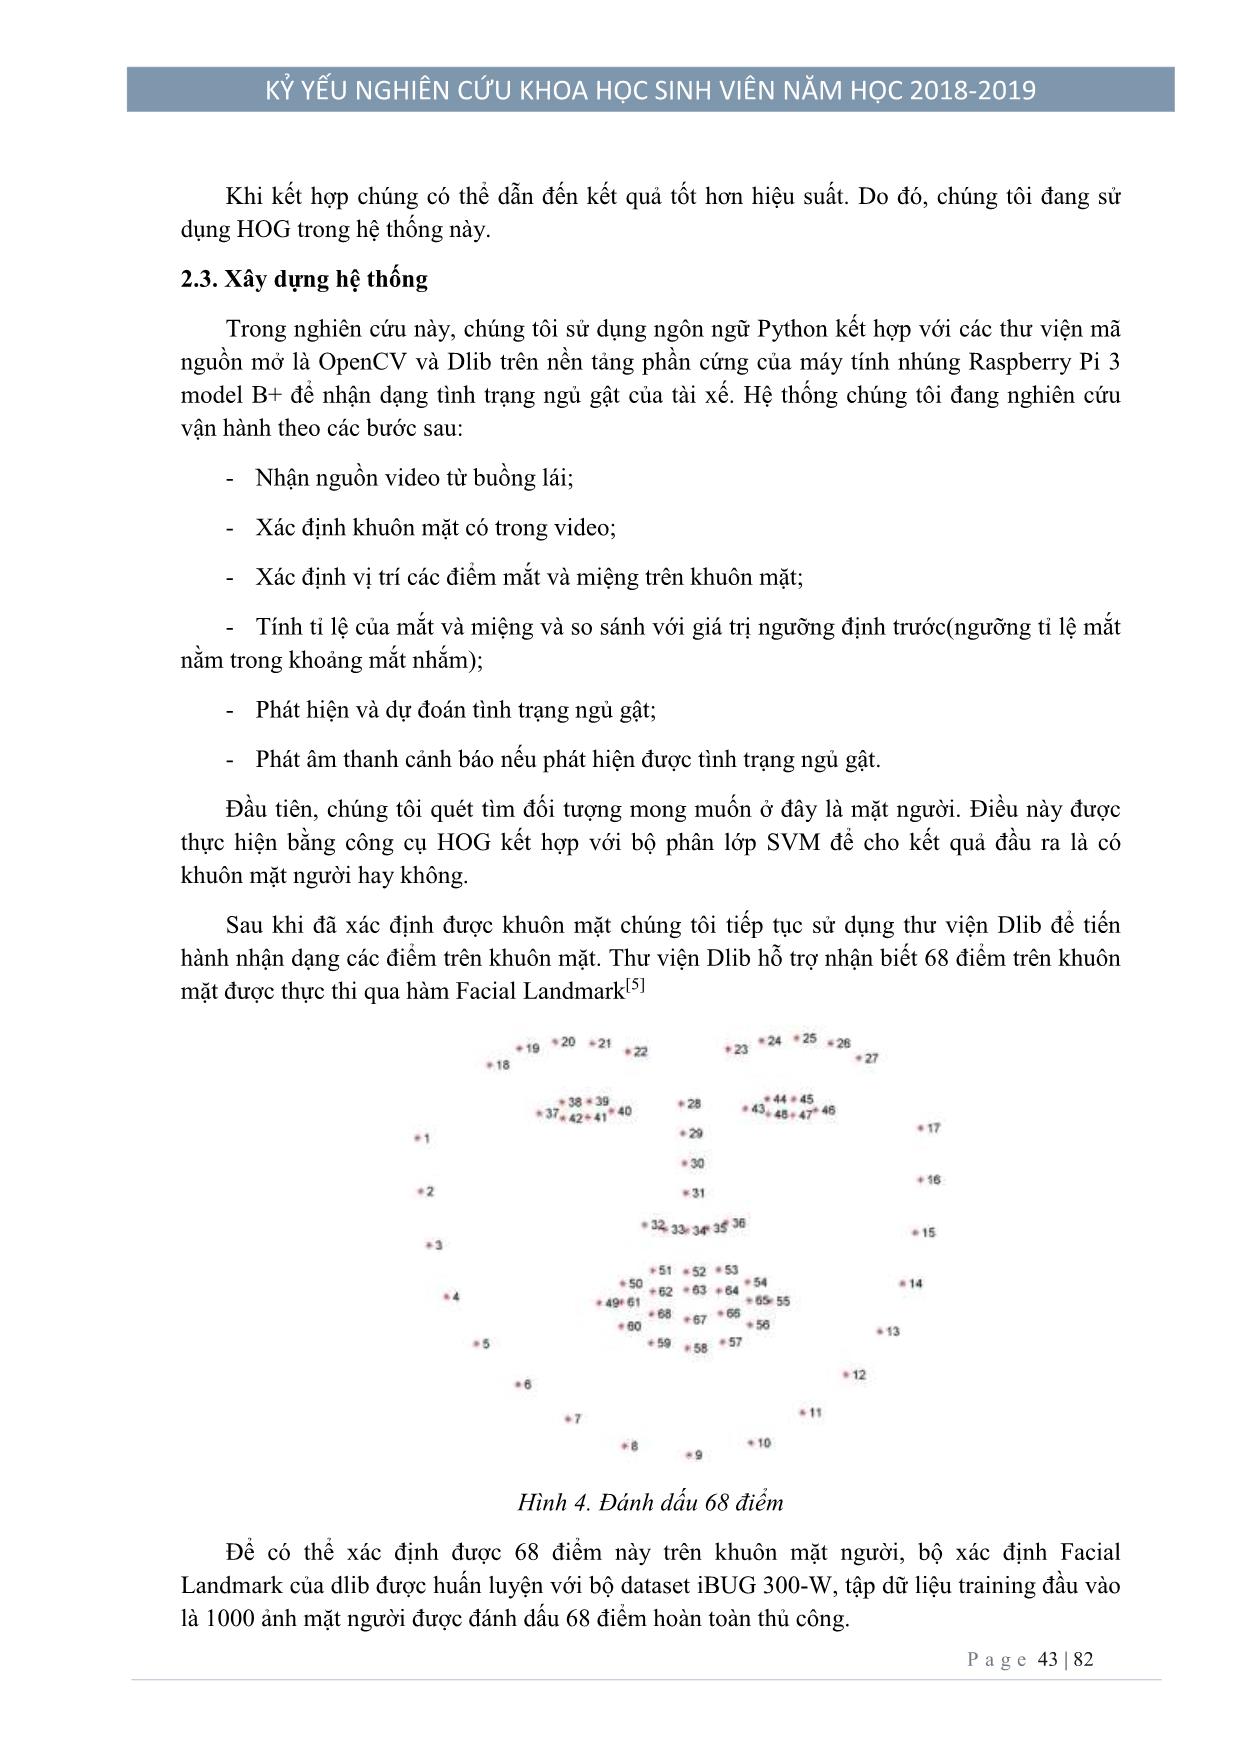 Xây dựng hệ thống cảnh báo ngủ gật trên Kit Raspberry PI 3 trang 4